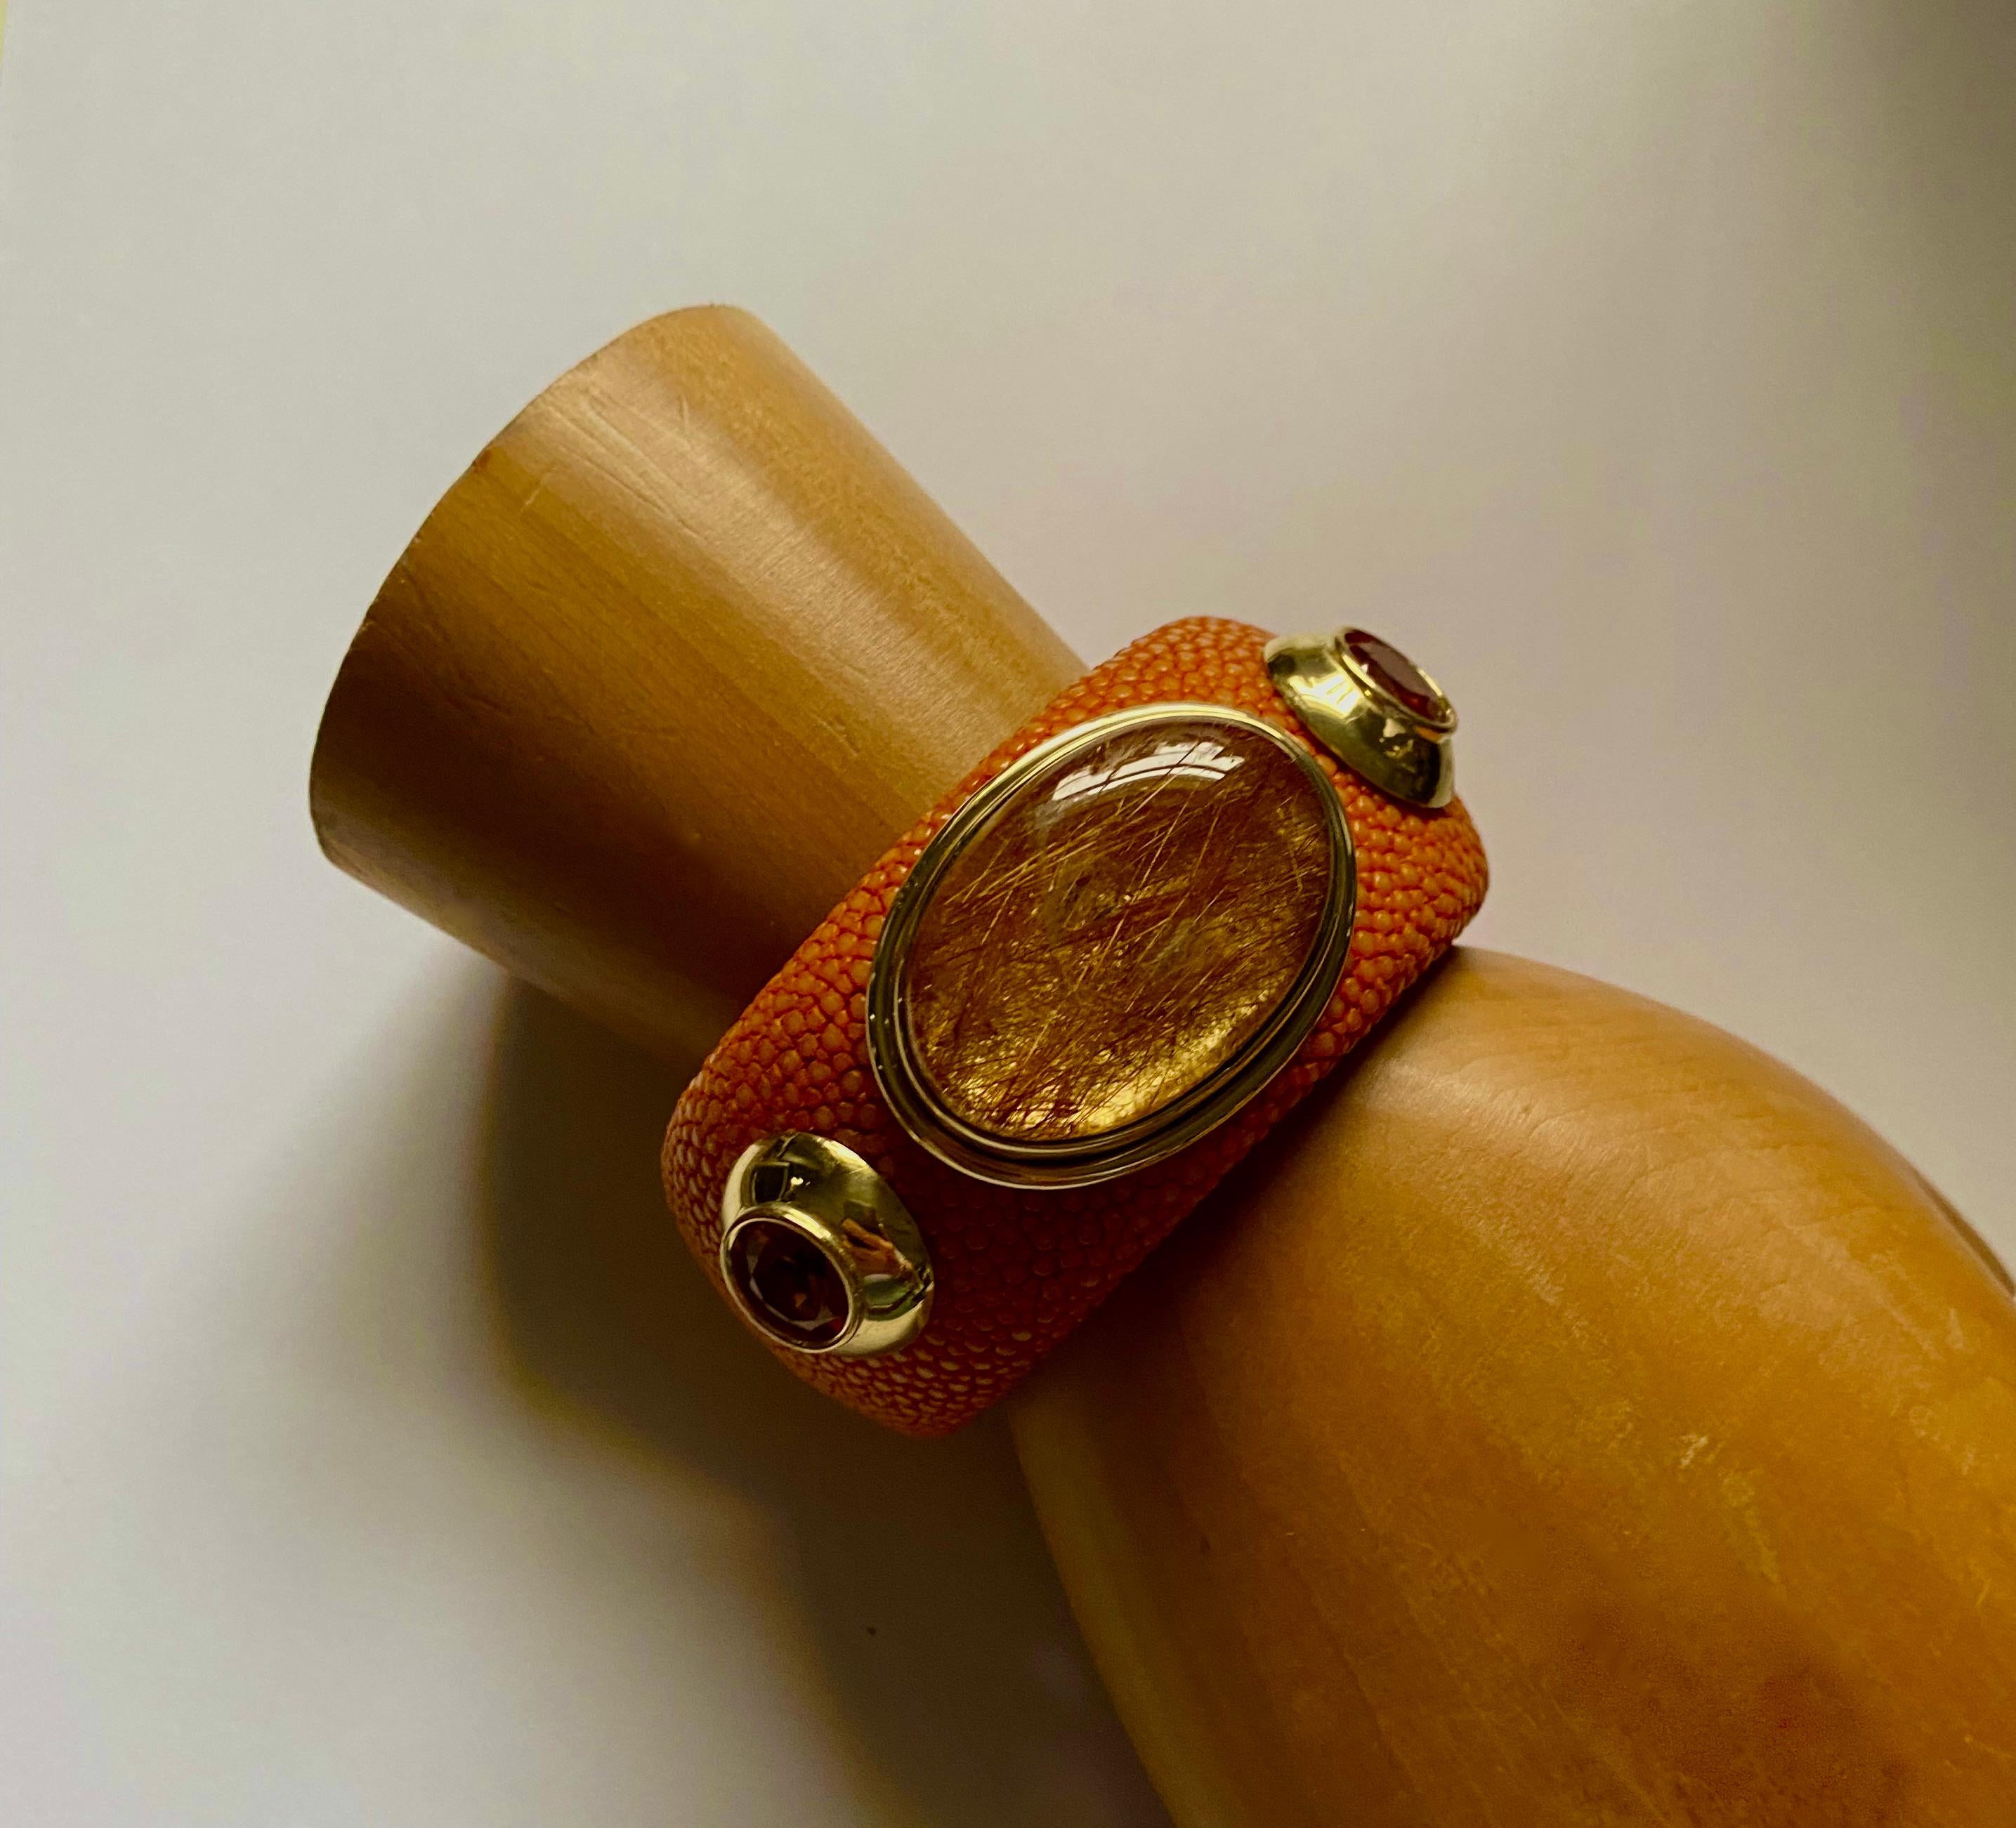 Le quartz rutile est la pièce maîtresse de ce bracelet manchette spectaculaire.  Le quartz rutilé (origine : Brésil) est un membre de la famille des quartz qui, dans ce cas, contient des inclusions de rutile en forme d'aiguille.  Il est apprécié